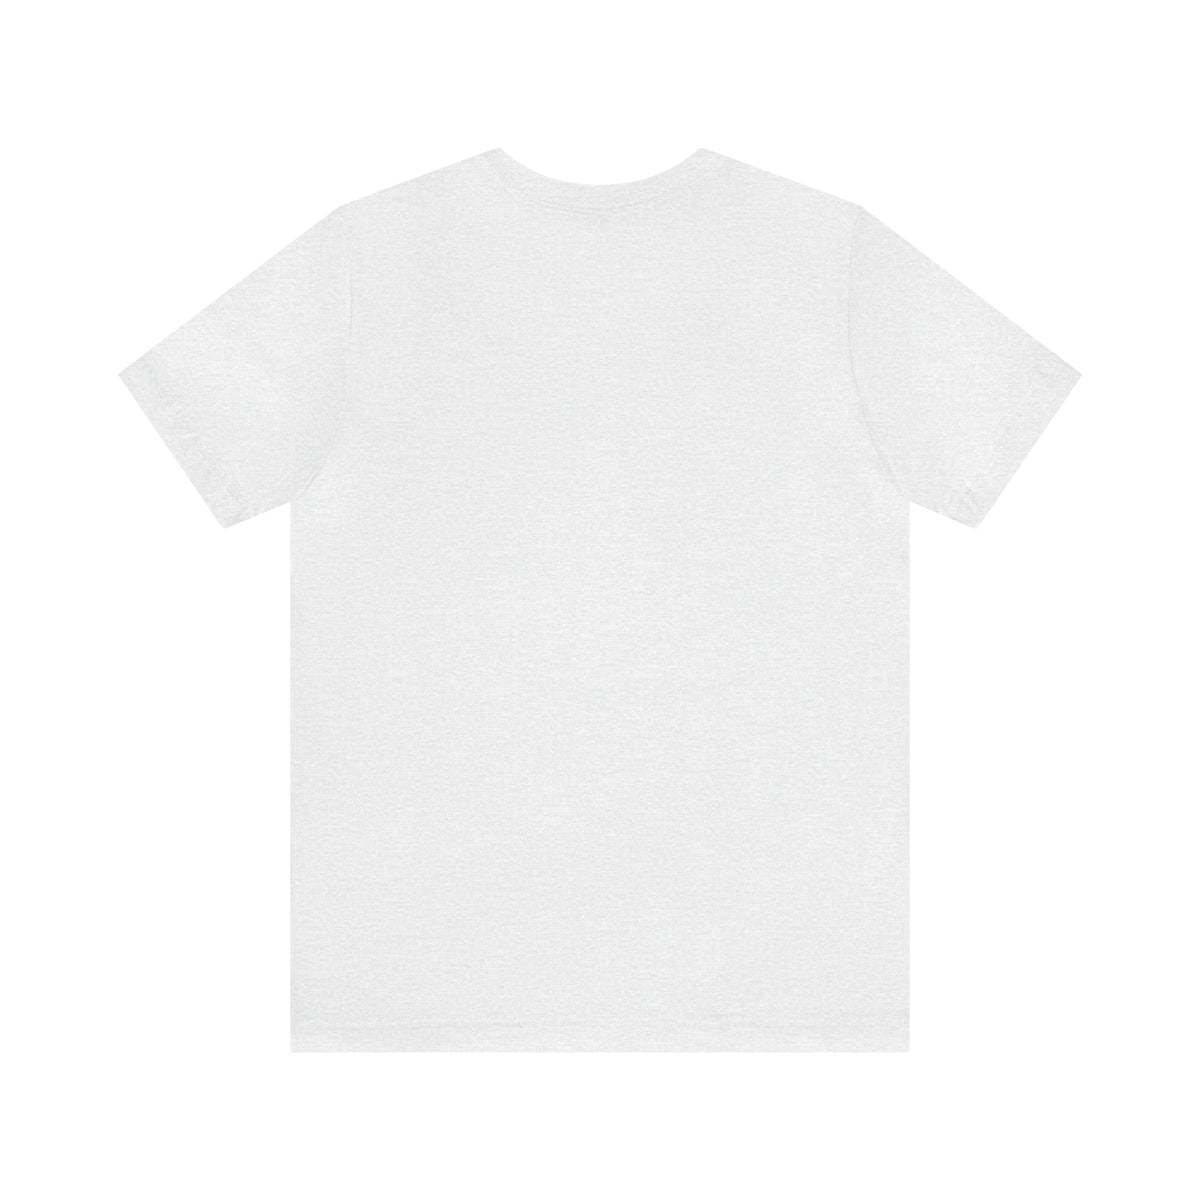 Hipster Sunset T Shirt Design Unisex Jersey